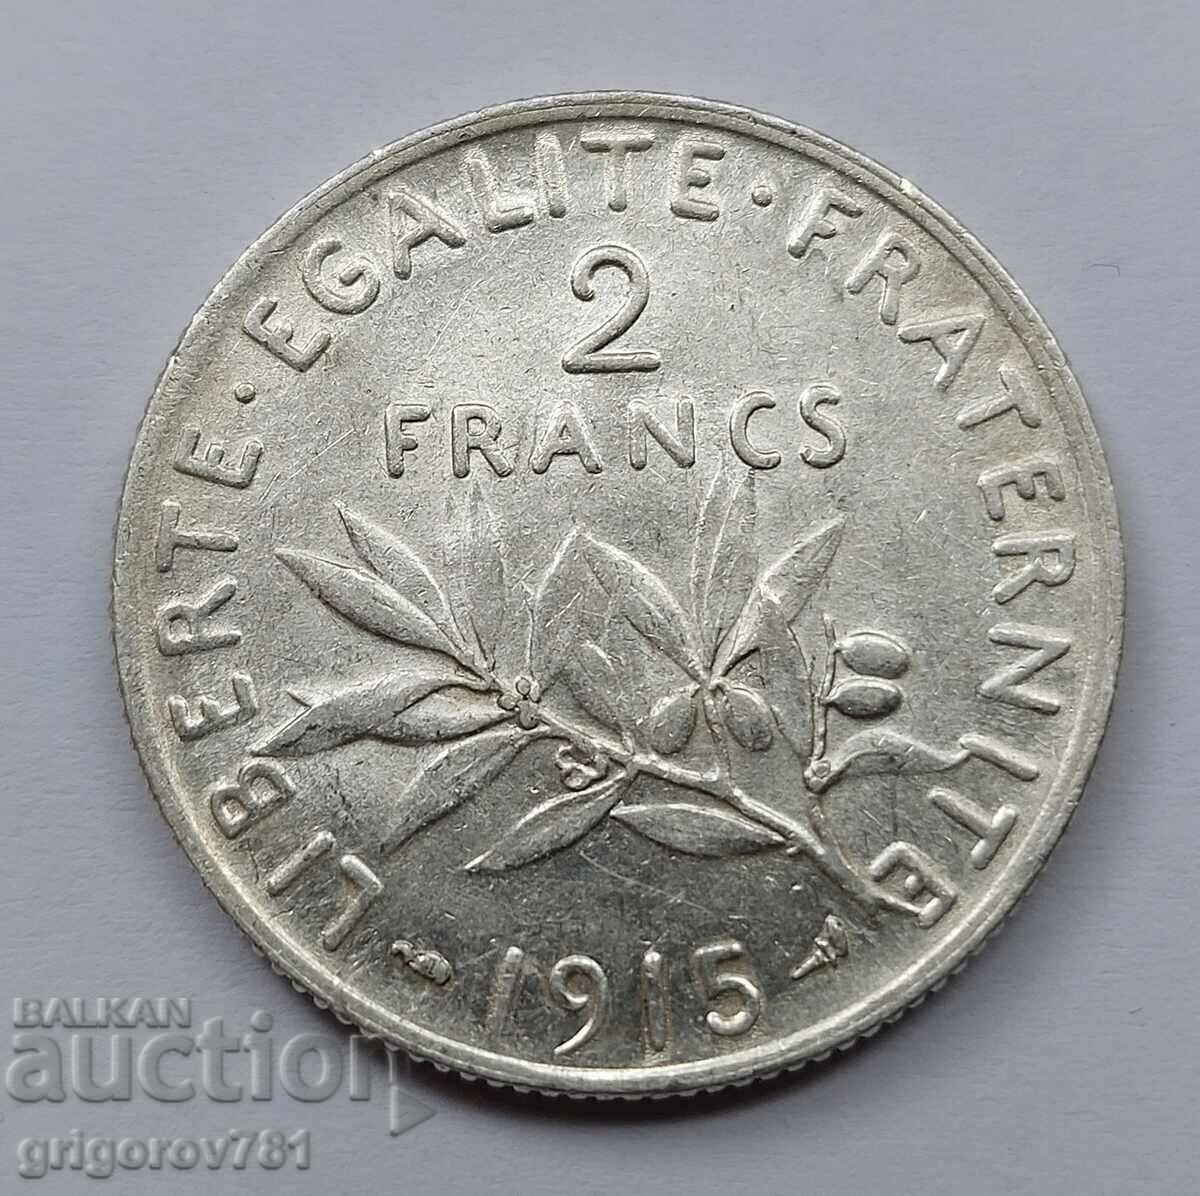 2 Franci Argint Franta 1915 - Moneda de argint #118